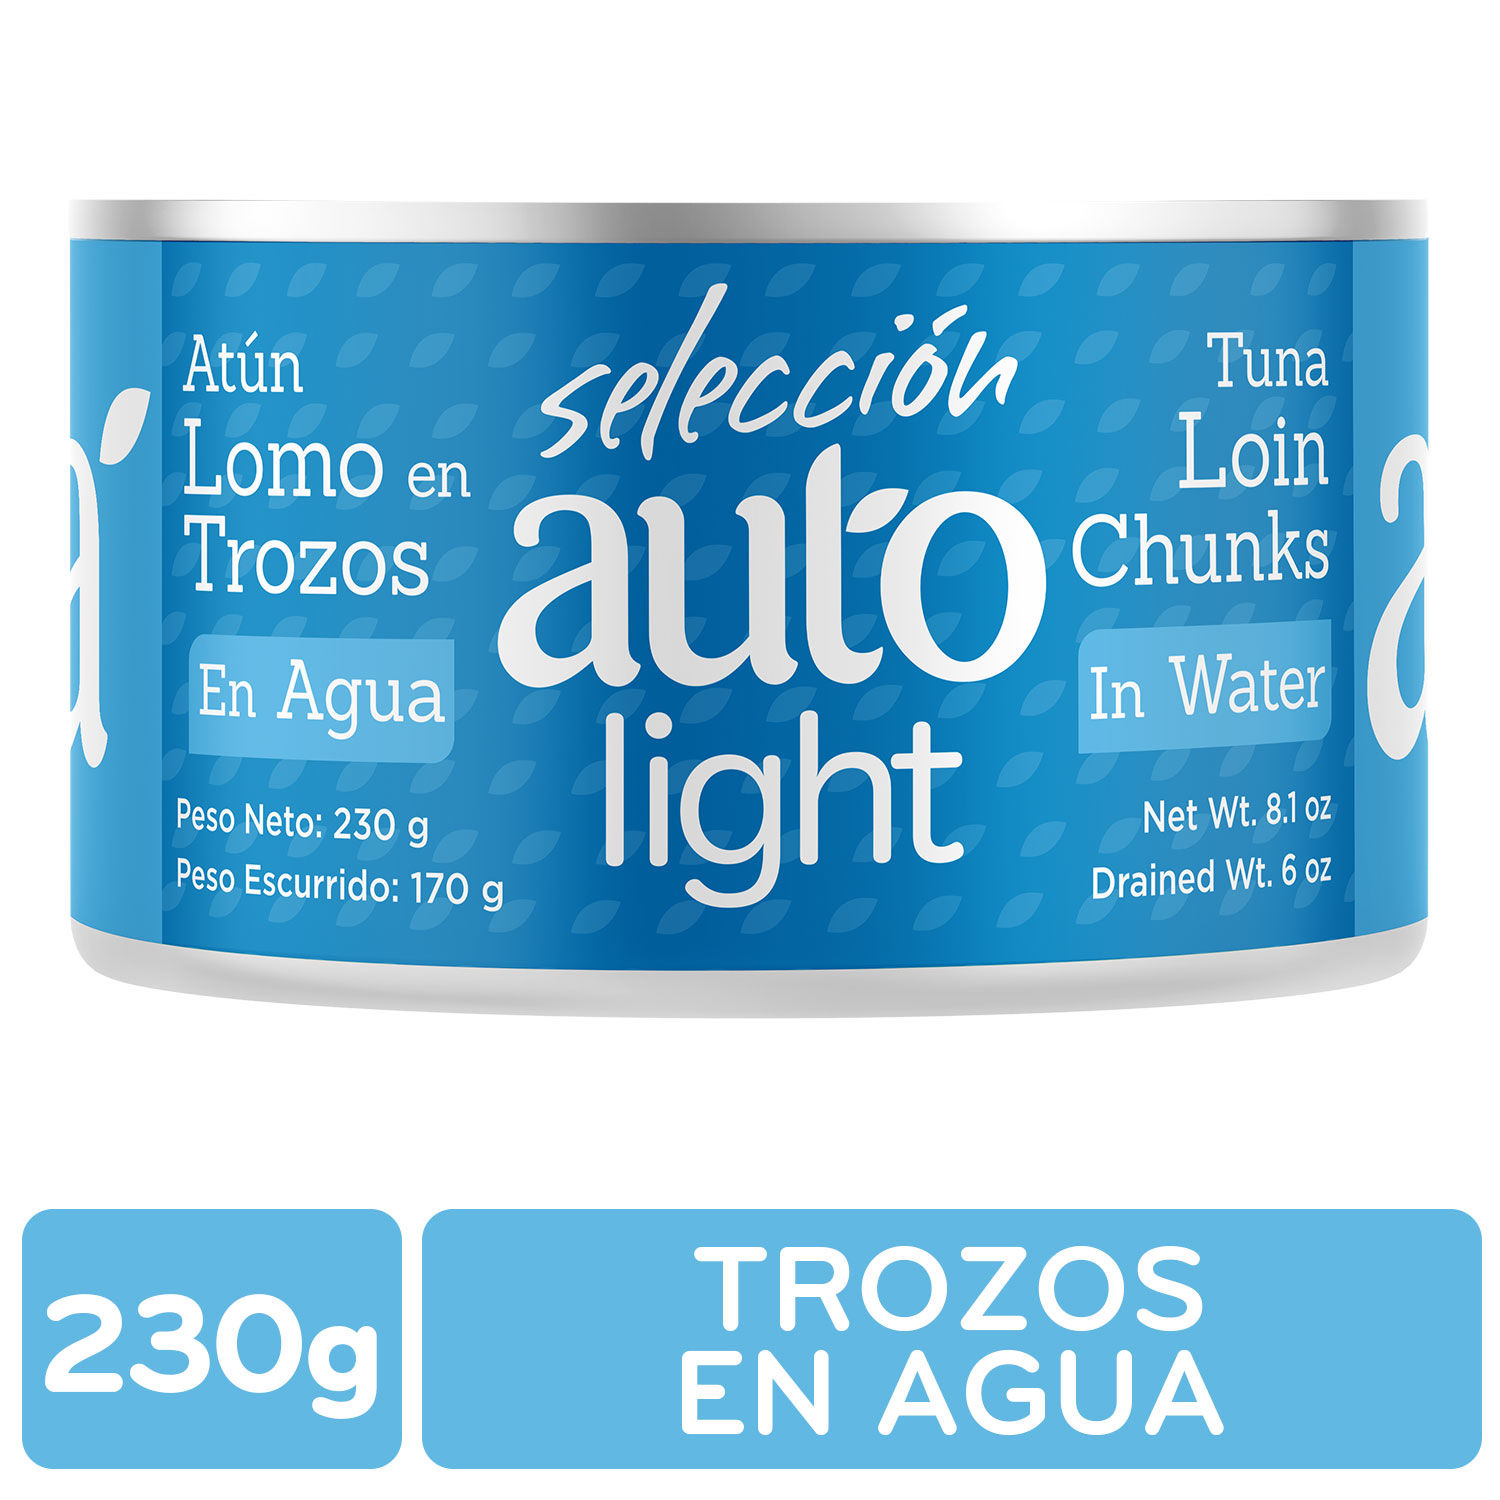 Atun Lomo Trozos Agua Selección Auto Lata 230 G